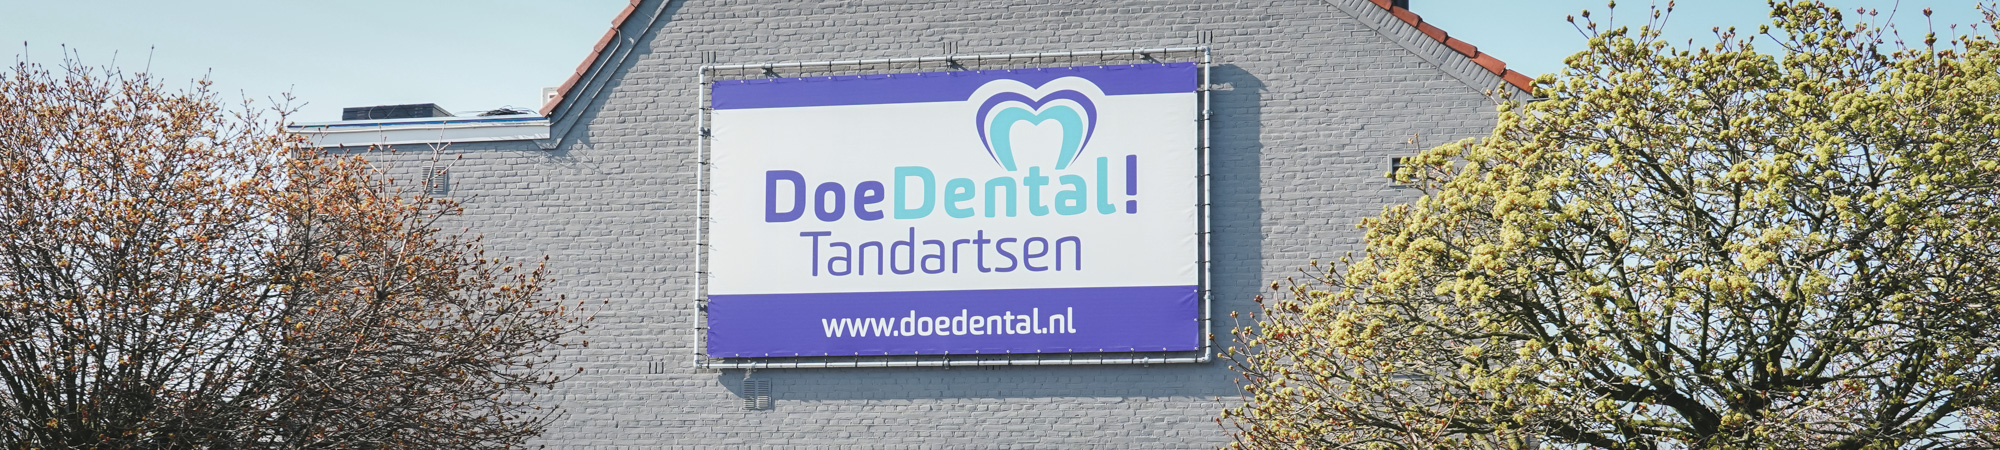 Spandoek Doe Dental header